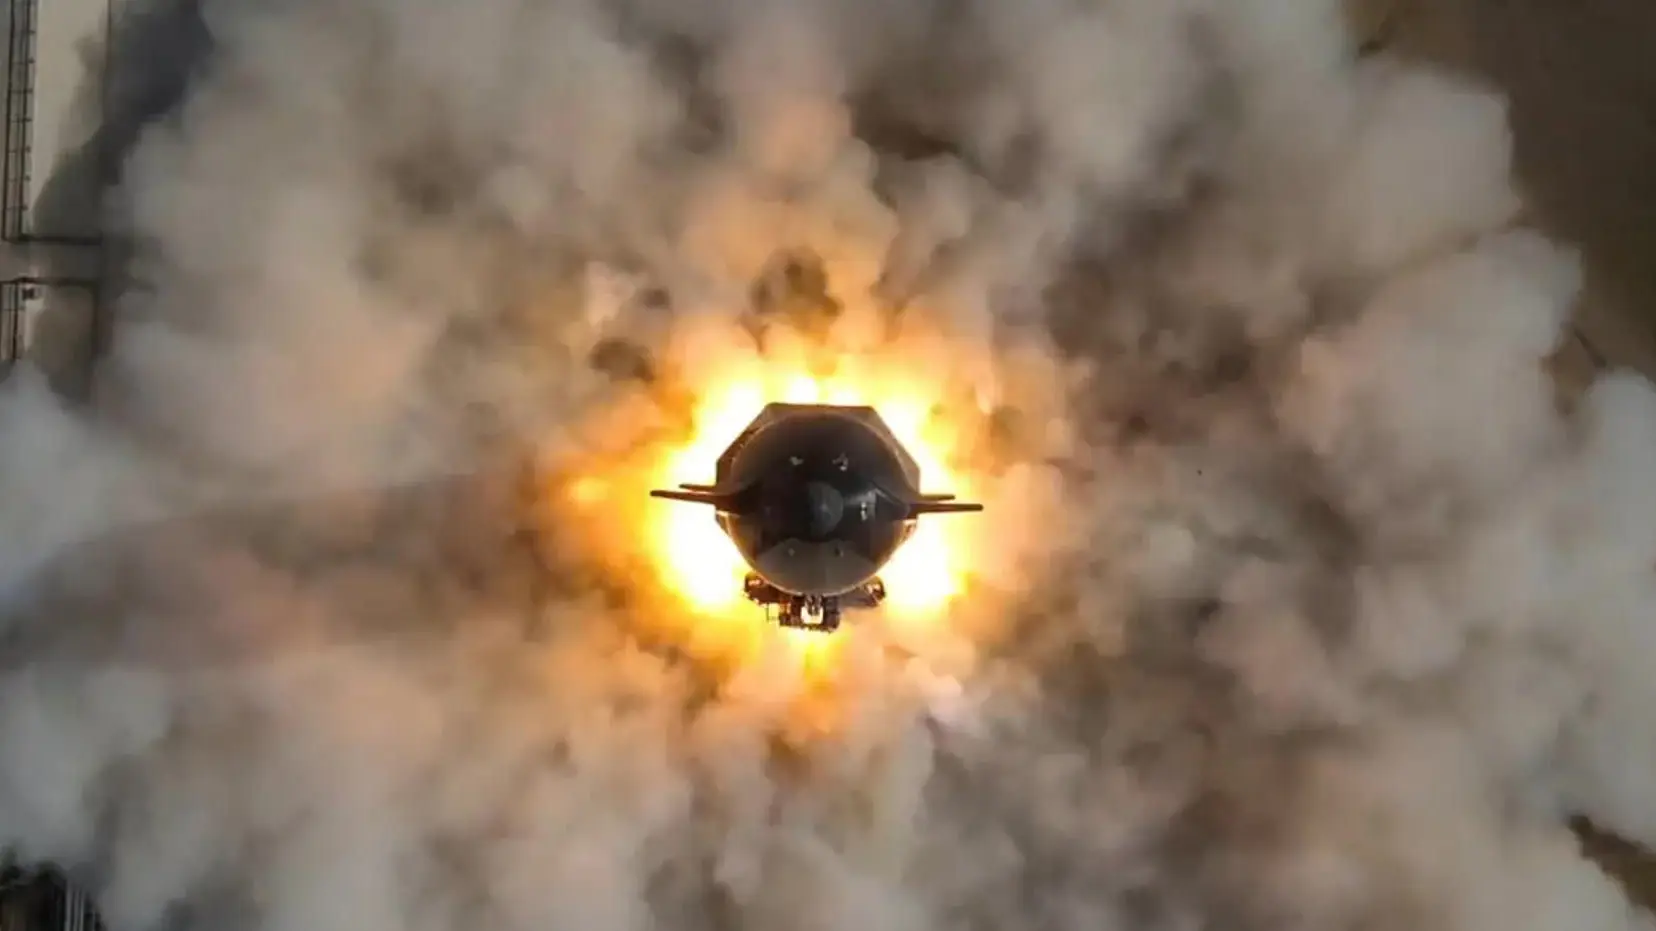 Lanzamiento del Starship, el cohete mas grande del mundo